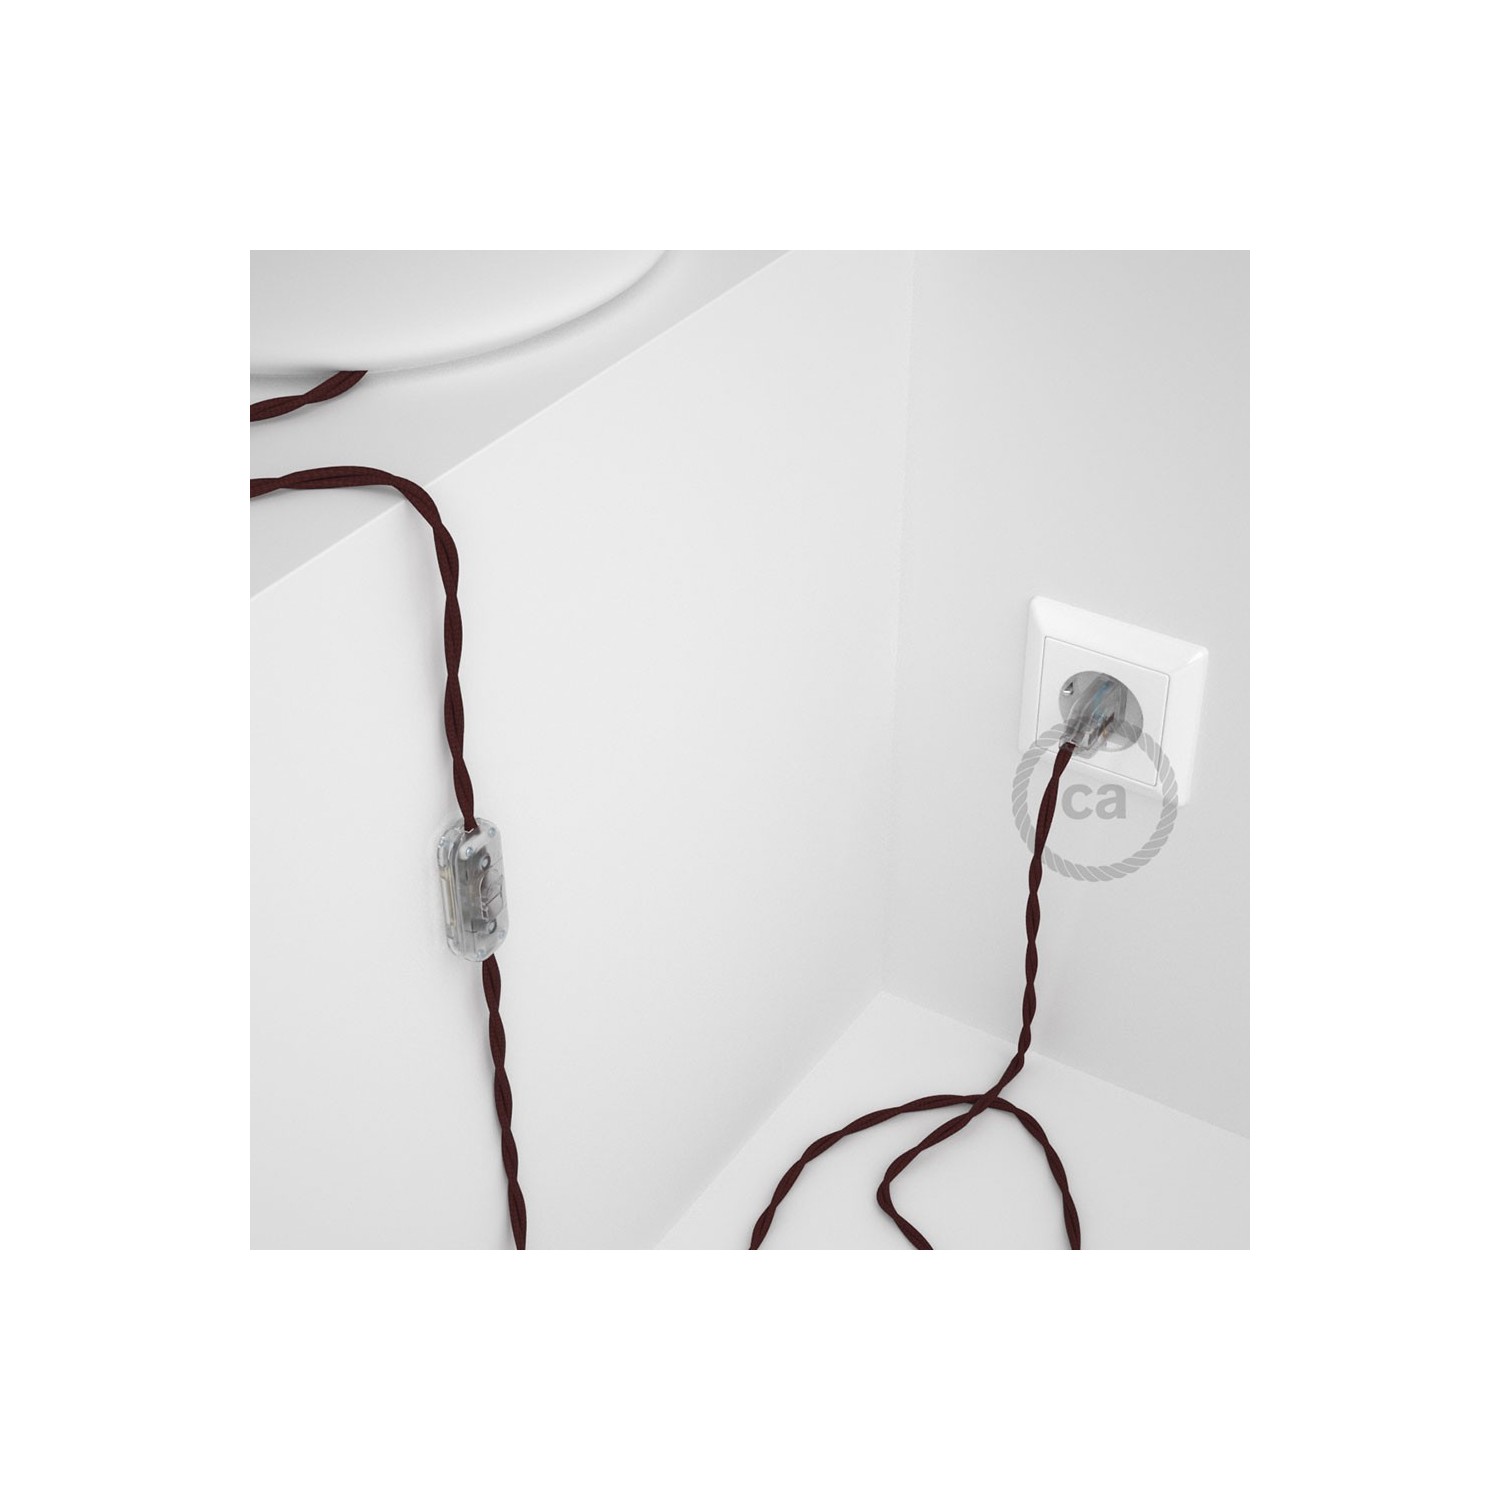 Cordon pour lampe, câble TM19 Effet Soie Bordeaux 1,80 m. Choisissez la couleur de la fiche et de l'interrupteur!